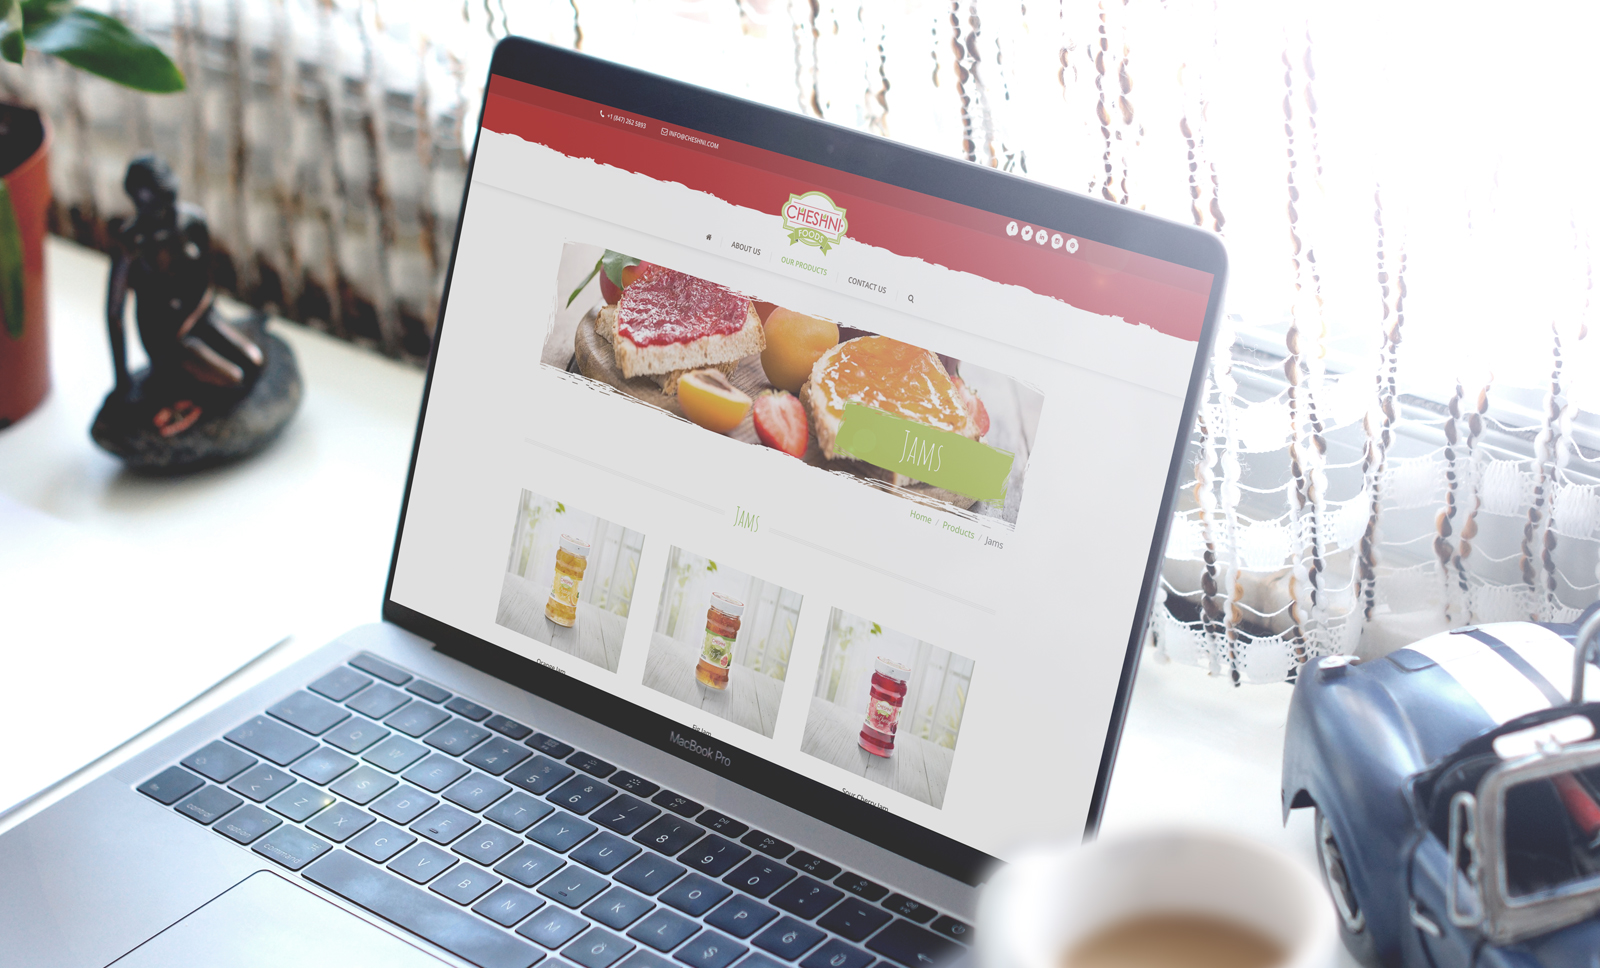 Creas Creative Tasarım ve Reklam Ajansı İzmir - Cheshni Food Web Site Tasarımı